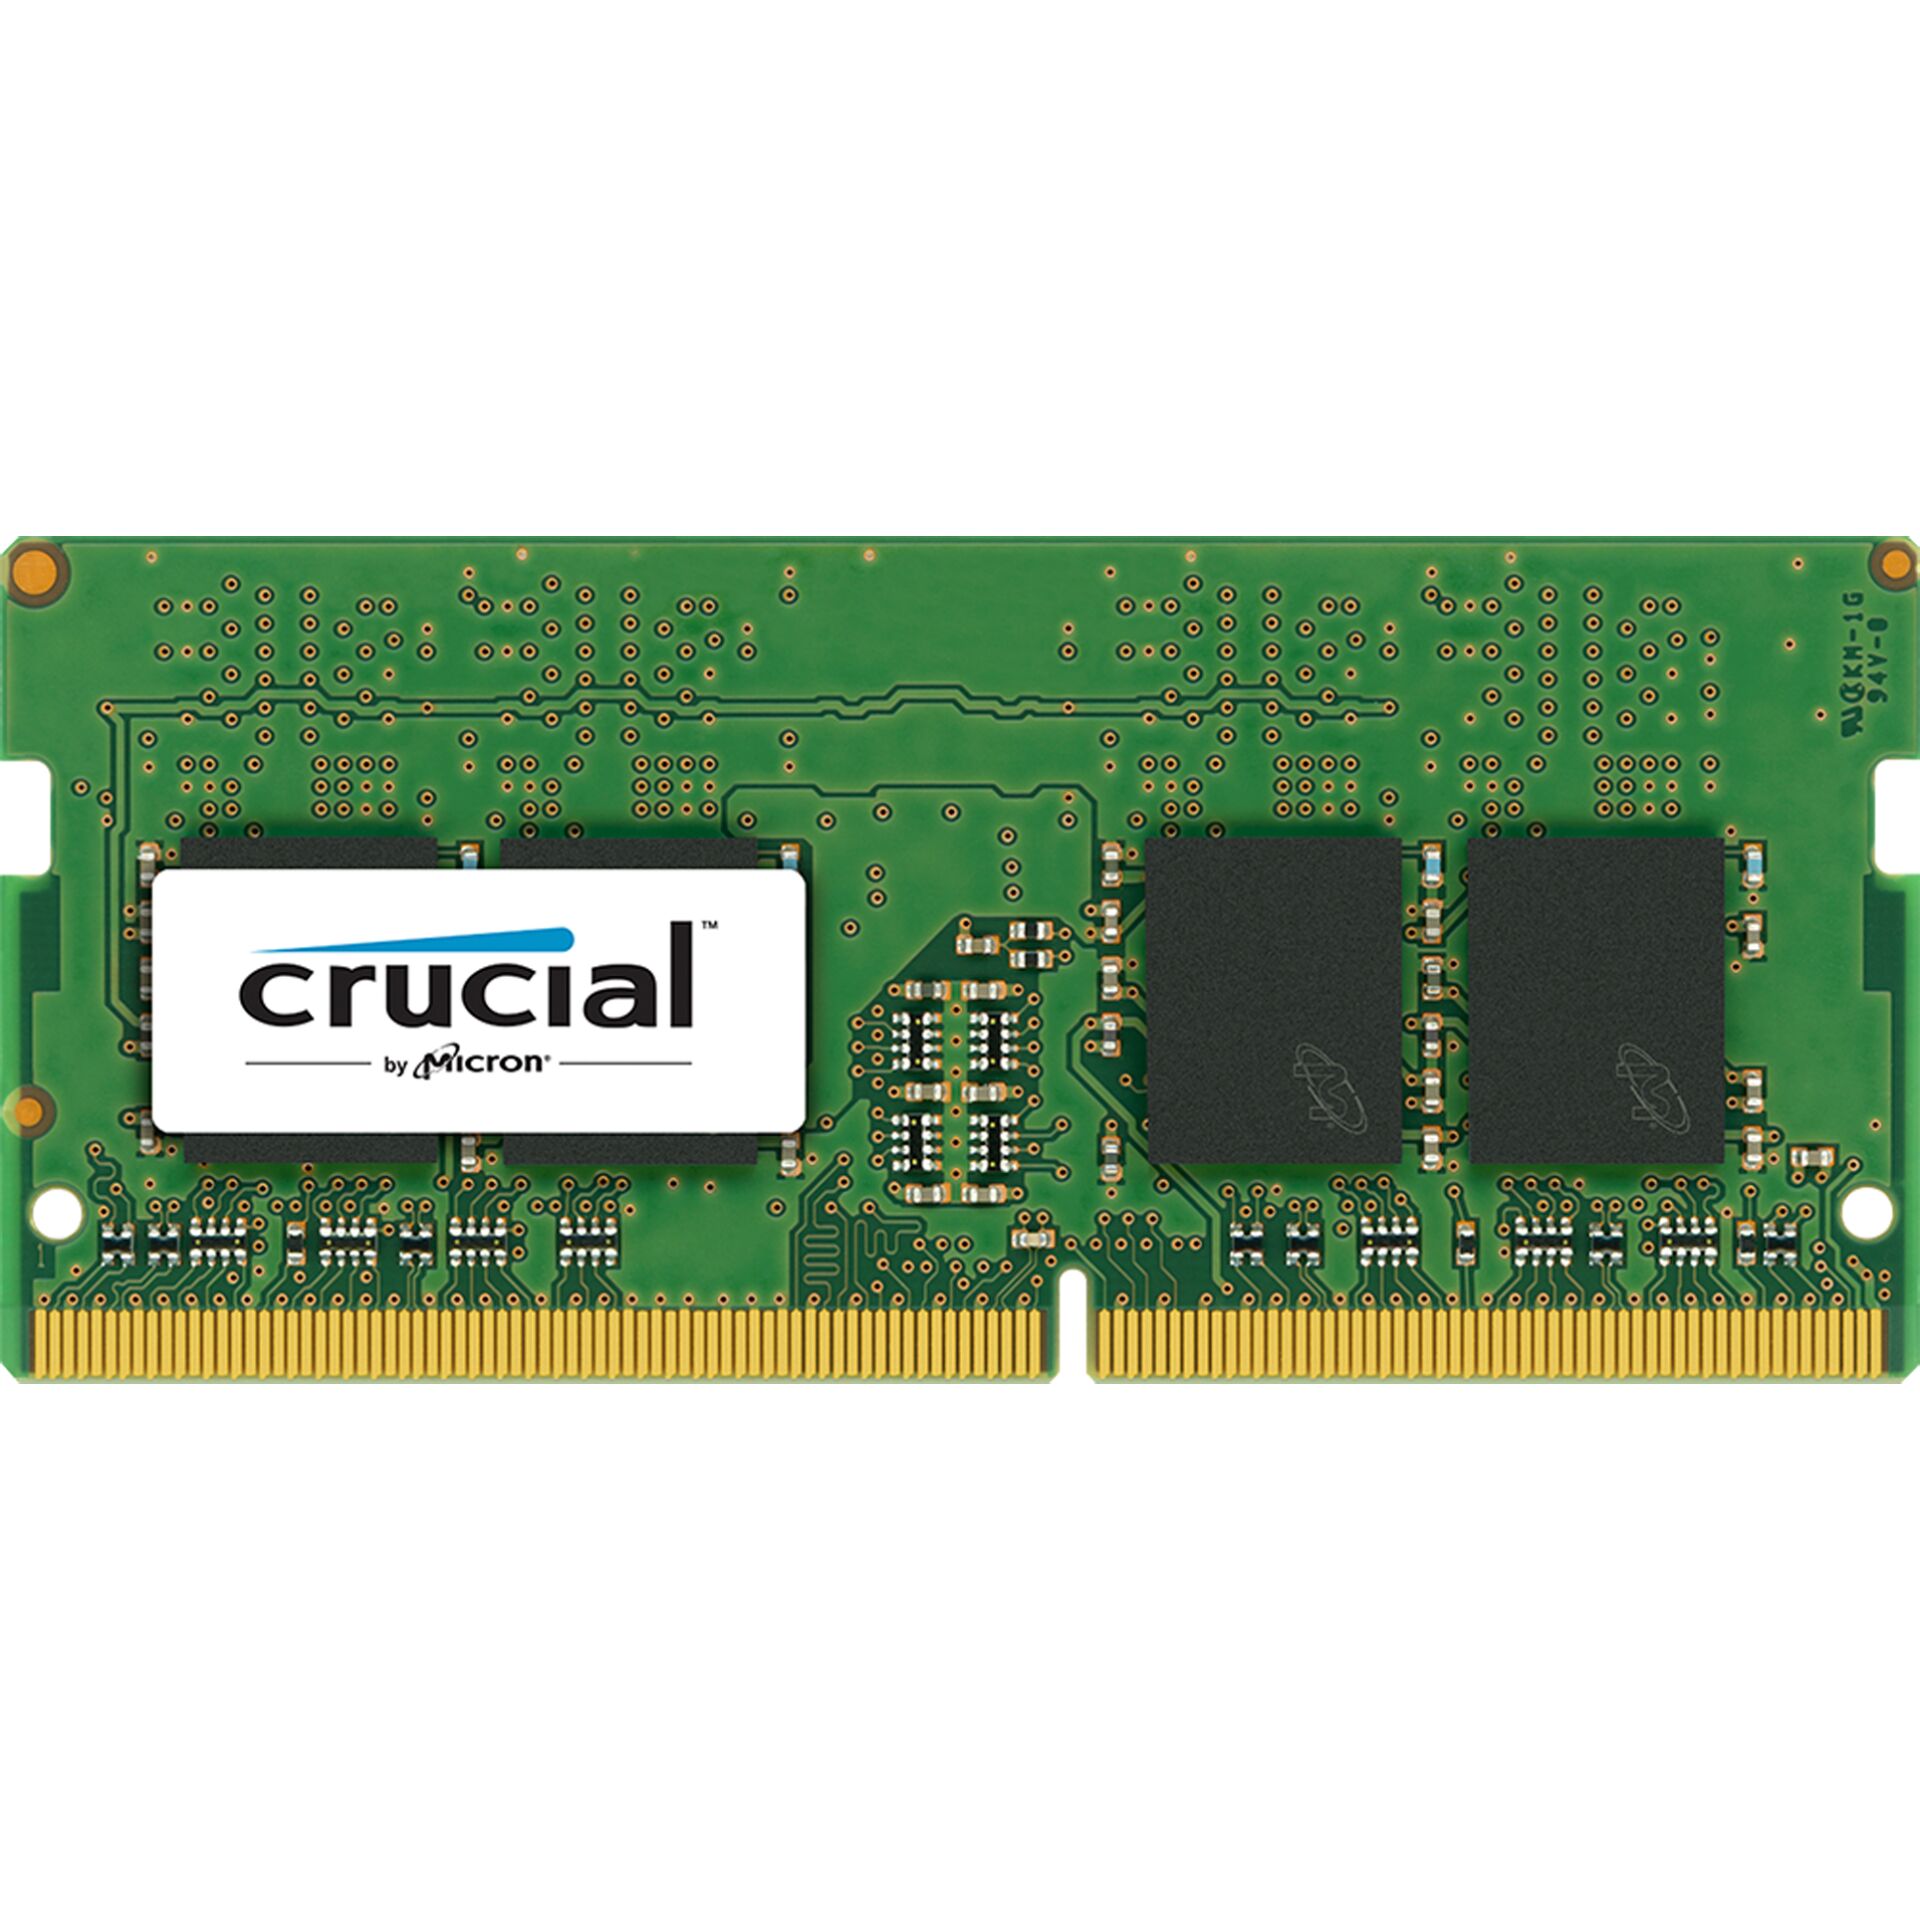 DDR4RAM 8GB DDR4-2400 Crucial SO-DIMM, CL17 